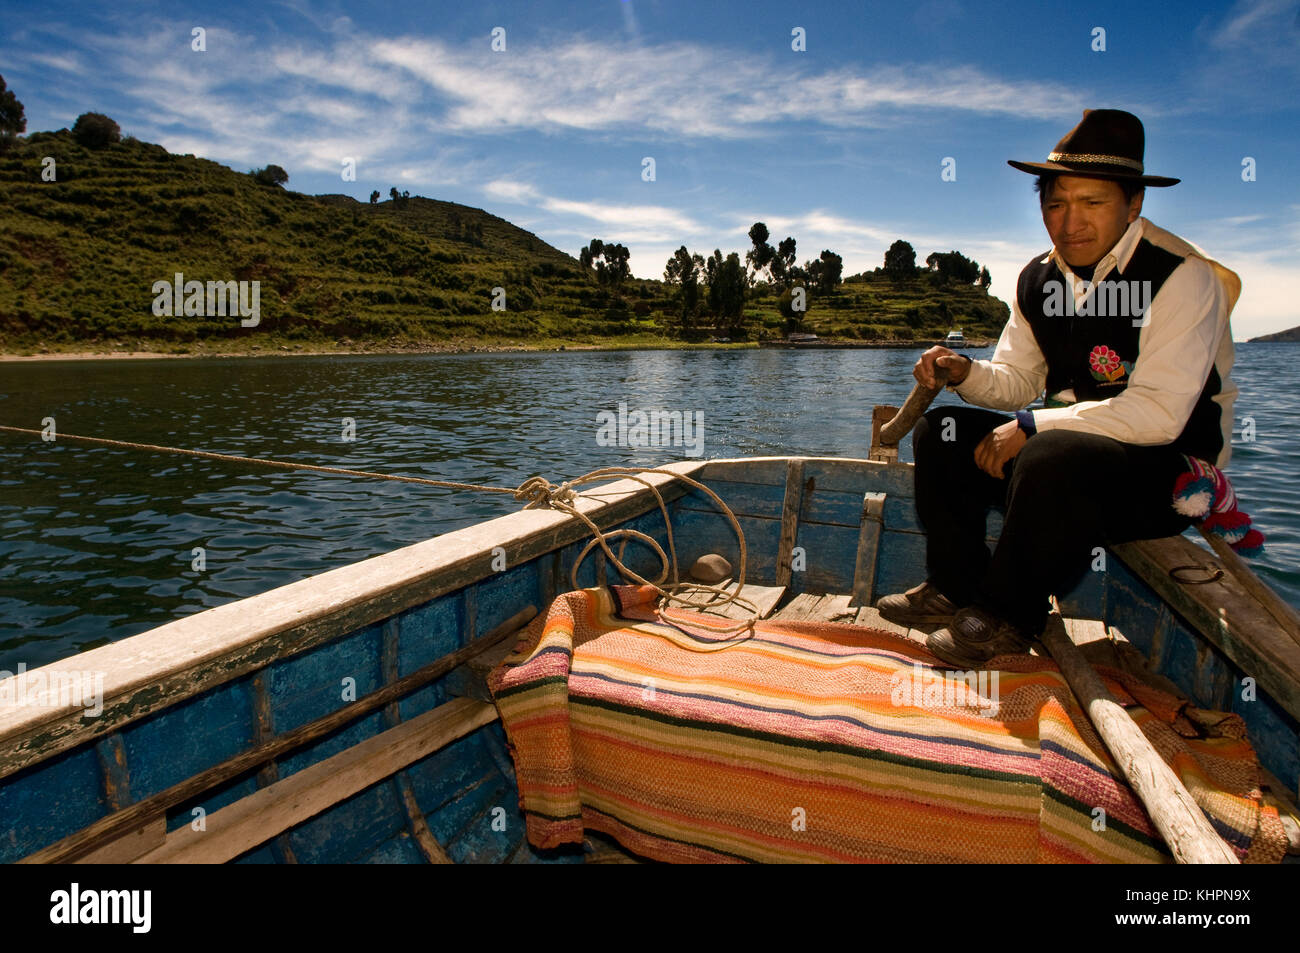 Un pescador navega en el lago Titicaca, cerca de la localidad de llachón. La península de Capachica, mirando hacia el continente. llachon, cerca de Puno, Perú. Foto de stock